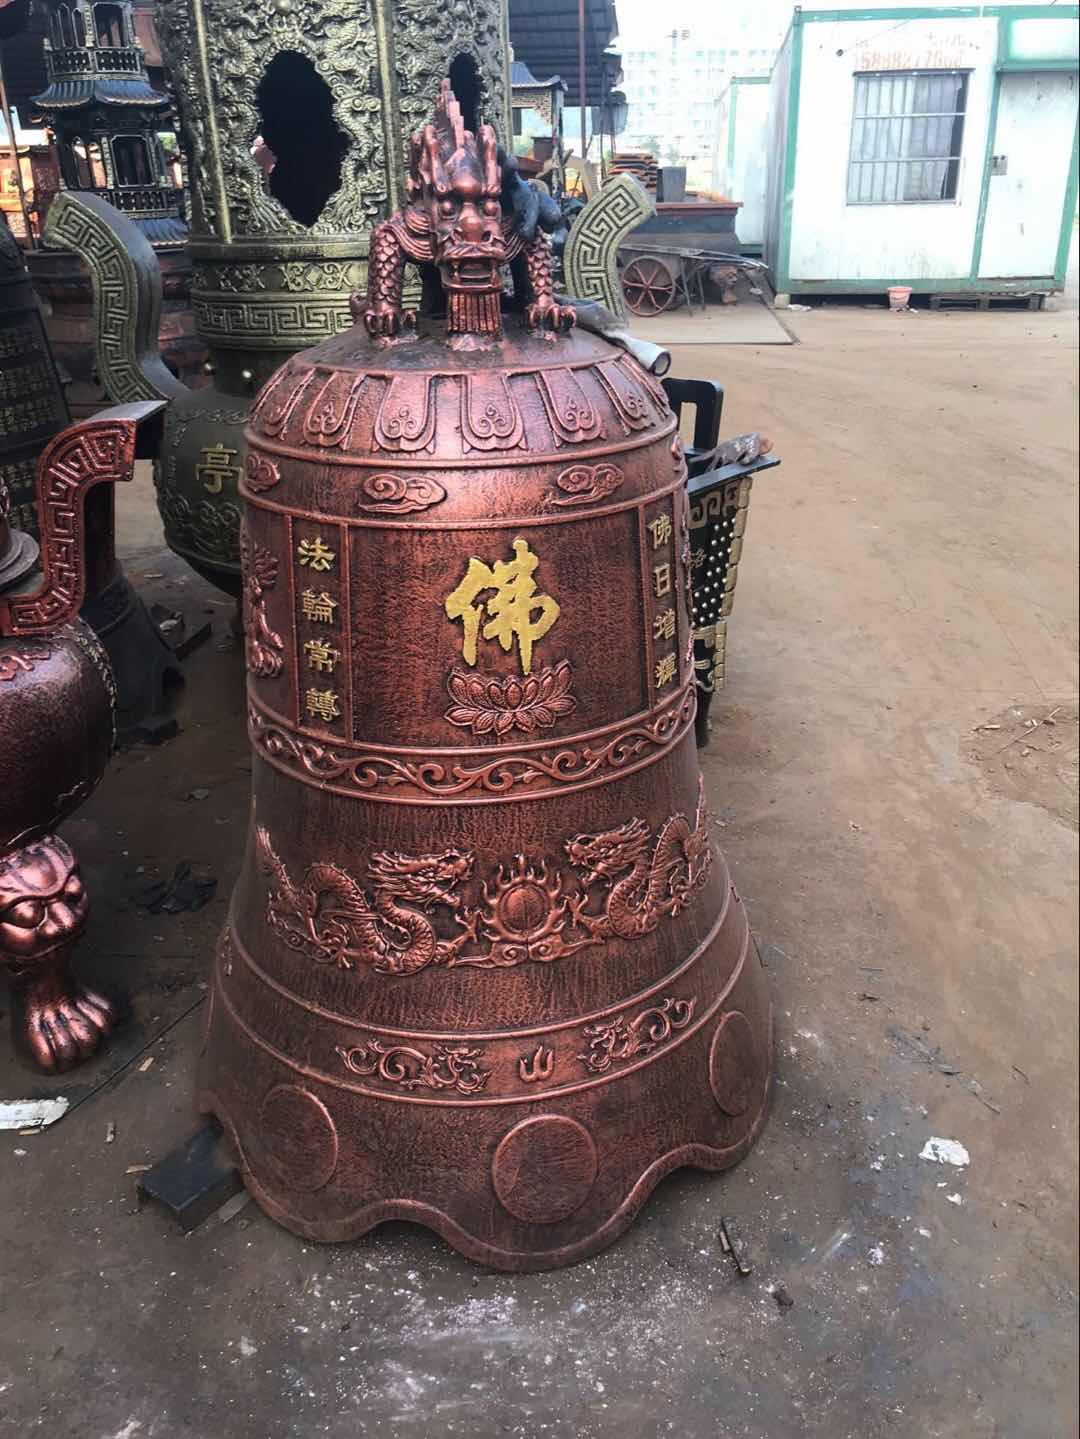 铁钟温州汇缘法器厂生产铸造铸铁铁钟 祠堂铁钟 喇叭形铁钟